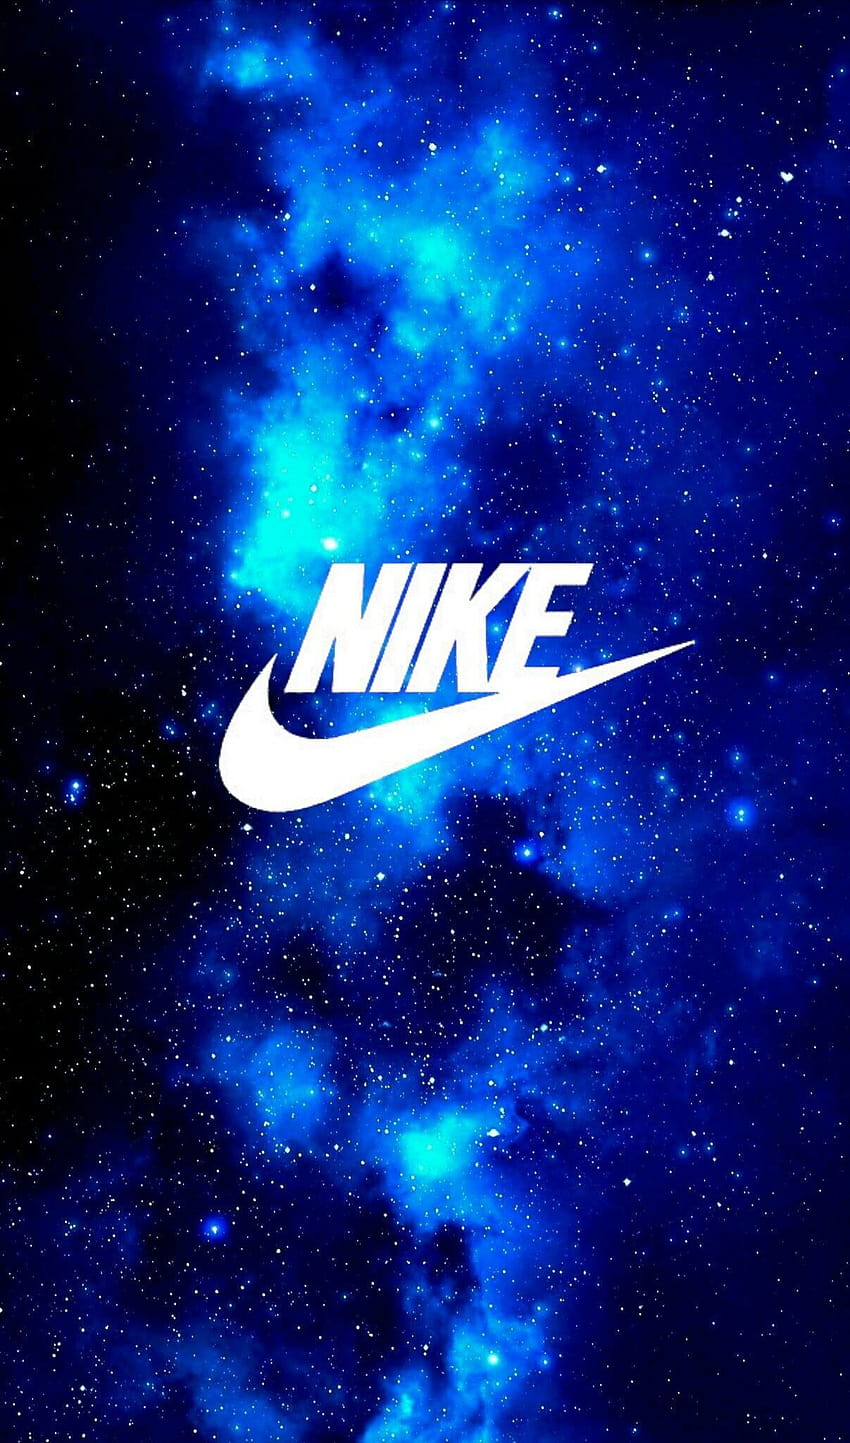 Logo Nike màu xanh là biểu tượng không thể thiếu của giới trẻ. Được sử dụng phổ biến trên sản phẩm Nike, những hình ảnh về logo này sẽ khiến bạn cảm thấy tự tin và năng động.